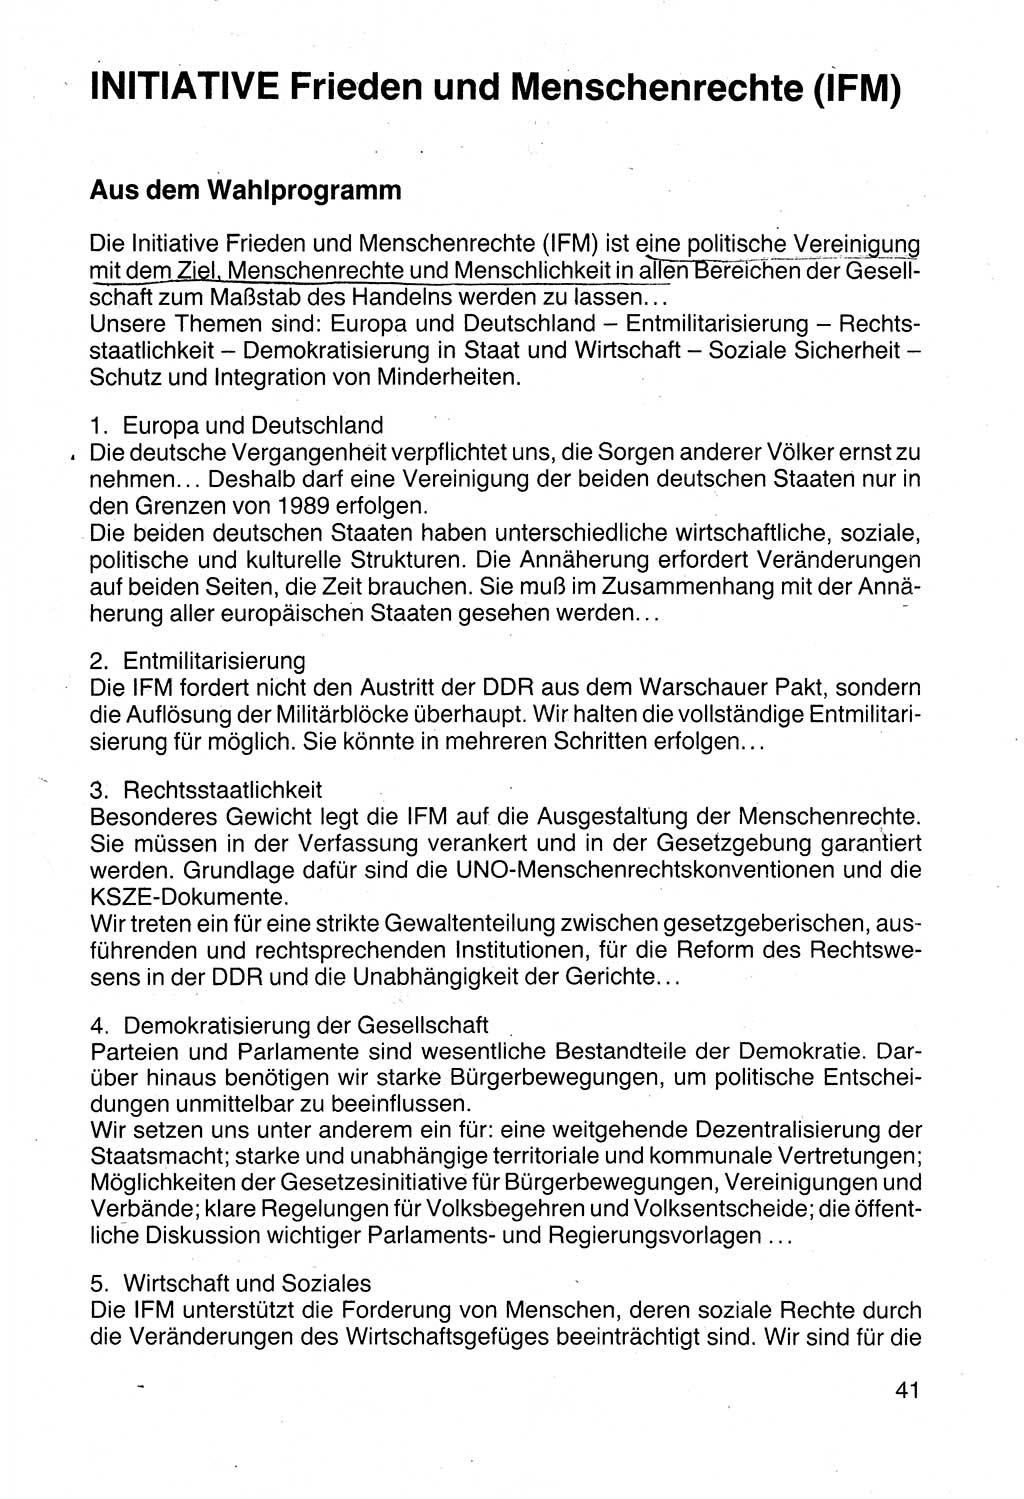 Politische Parteien und Bewegungen der DDR (Deutsche Demokratische Republik) über sich selbst 1990, Seite 41 (Pol. Part. Bew. DDR 1990, S. 41)